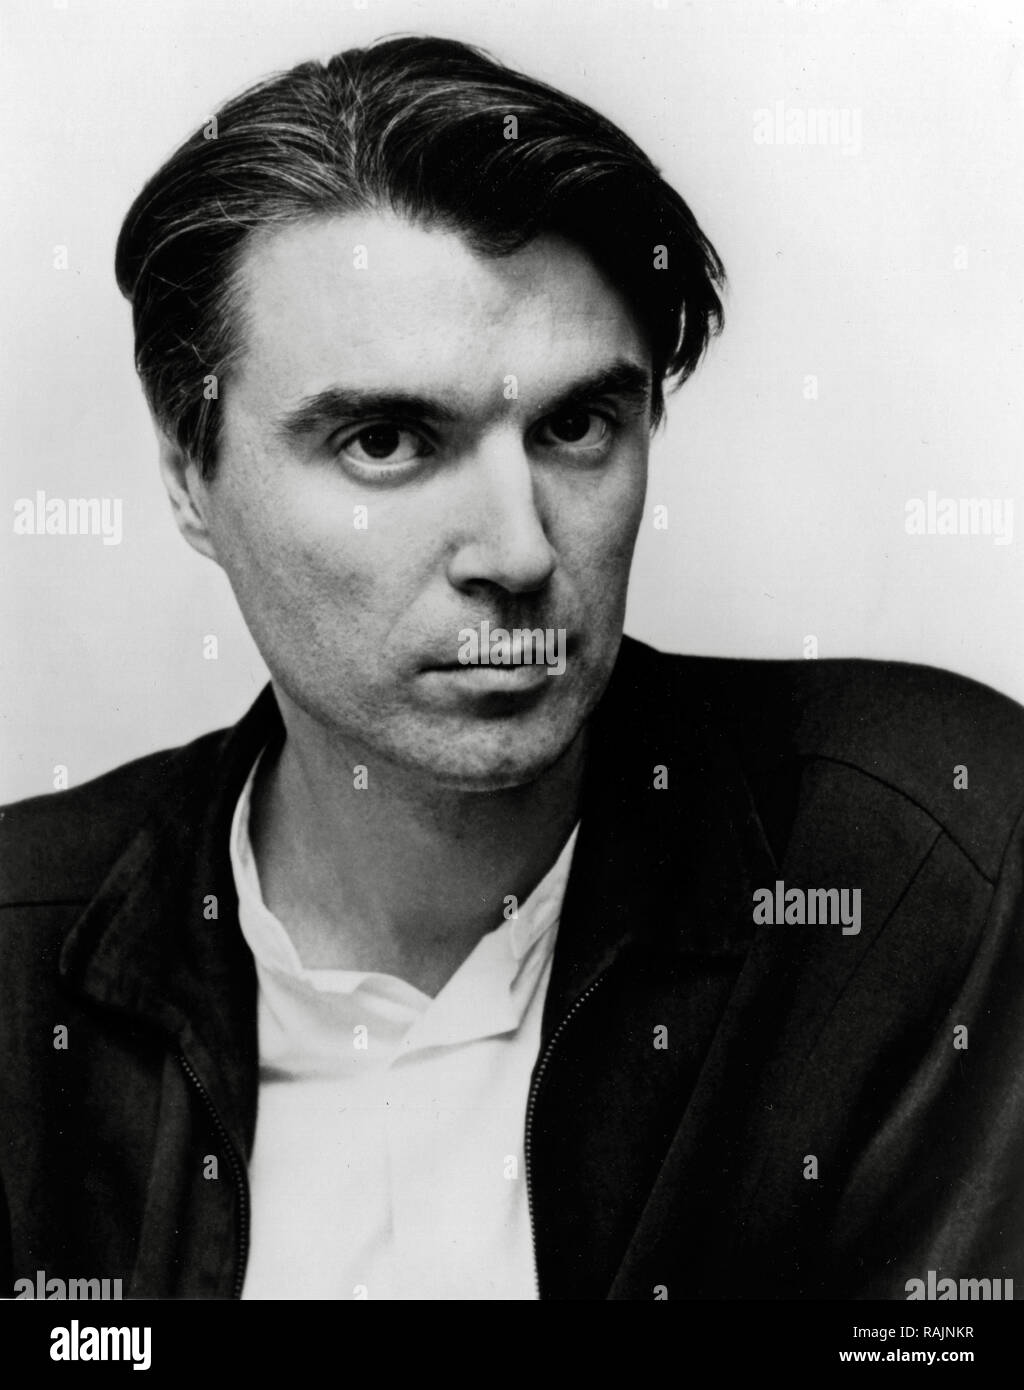 Pubblicità foto di David Byrne, (le teste parlanti), circa 1988 Riferimento File # 33636 914THA Foto Stock